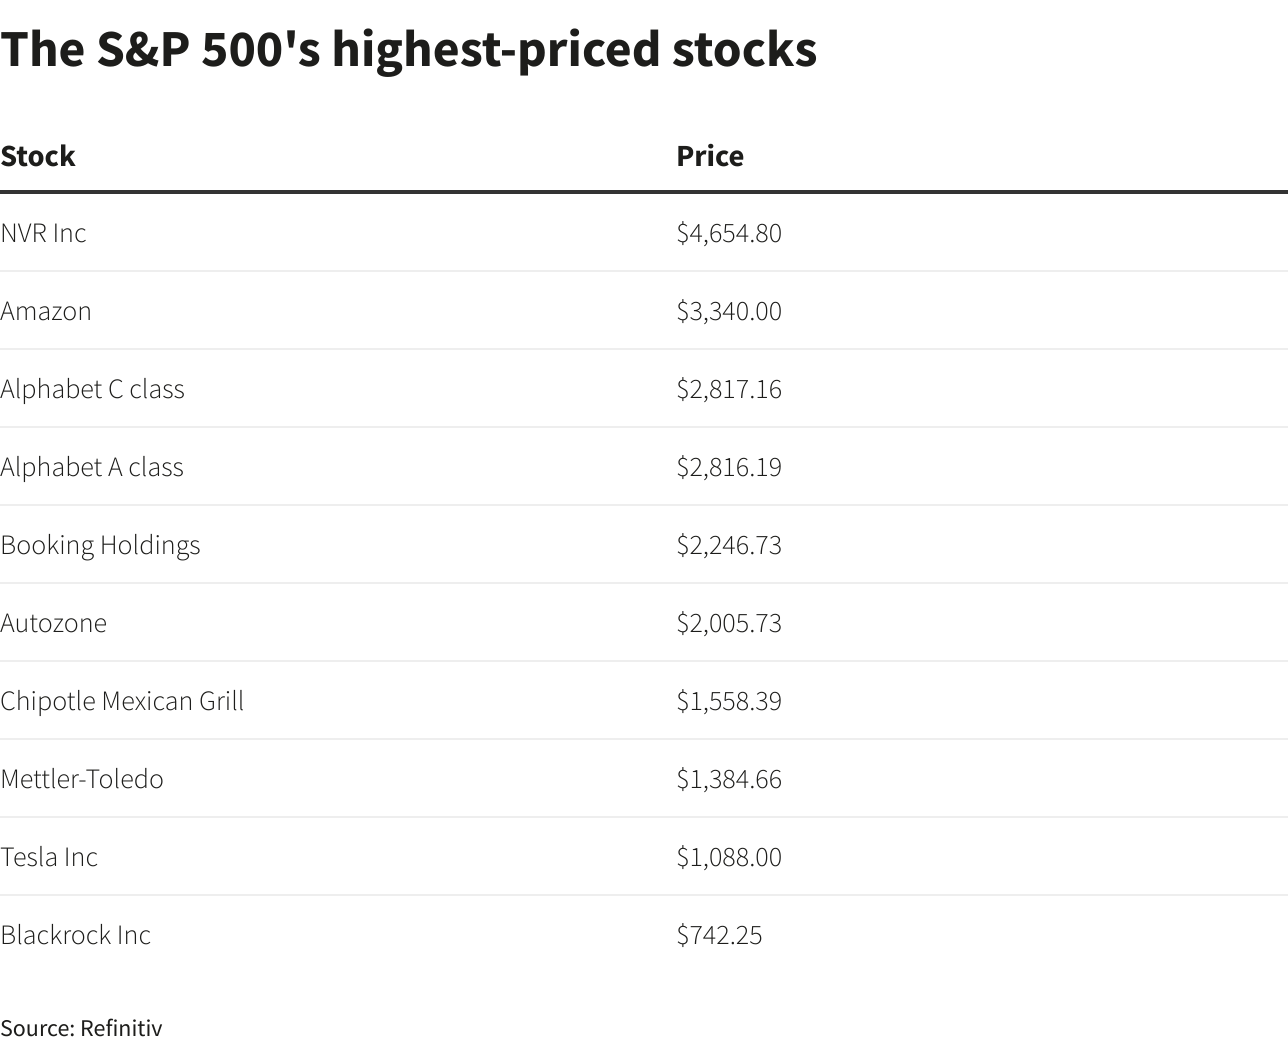 Top S&P 500 Stocks